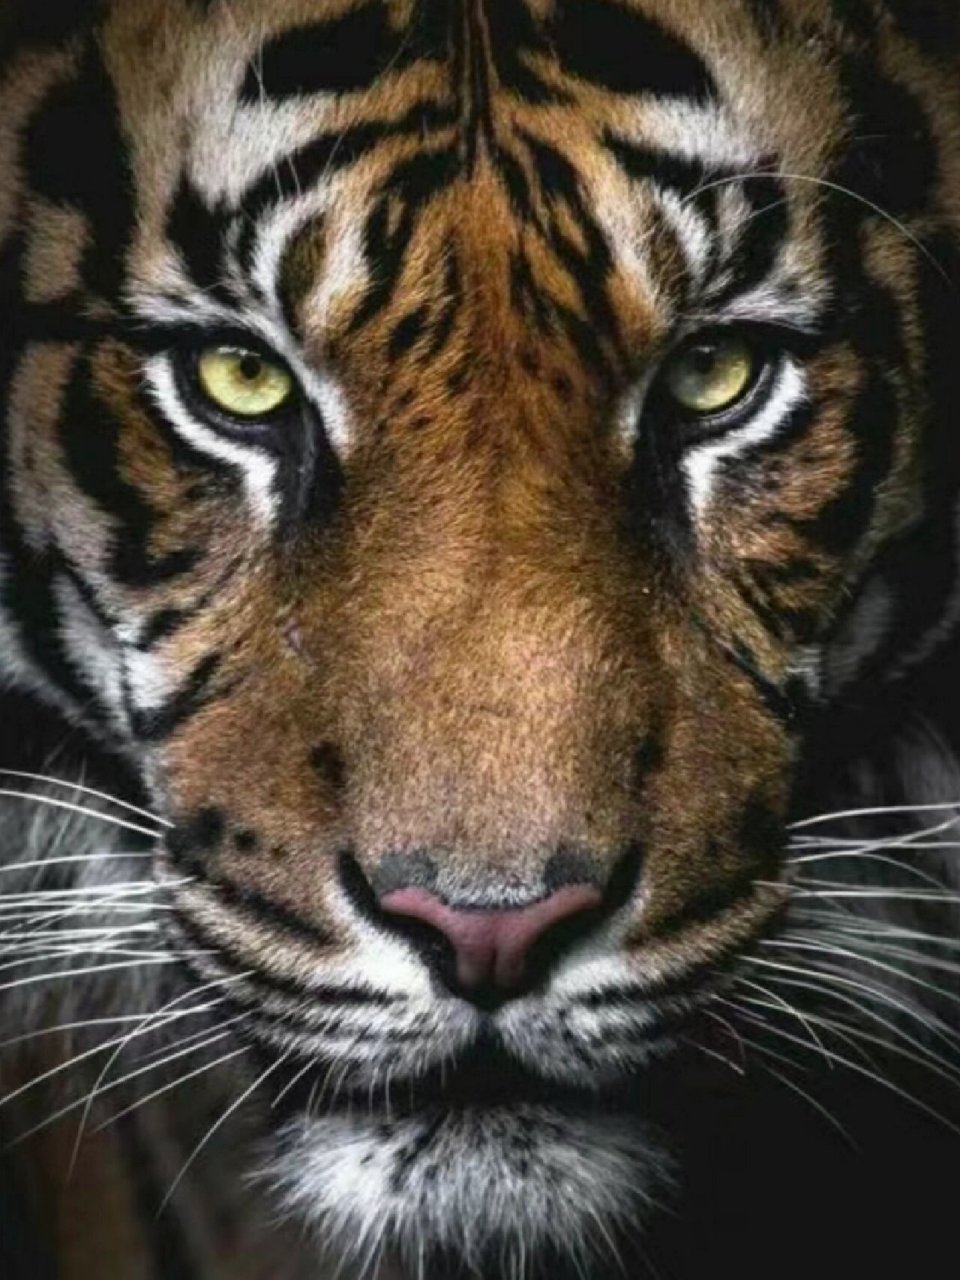 老虎91正气凶猛,眼神坚定有力量 多对视猛兽眼睛,接受老虎能量,能